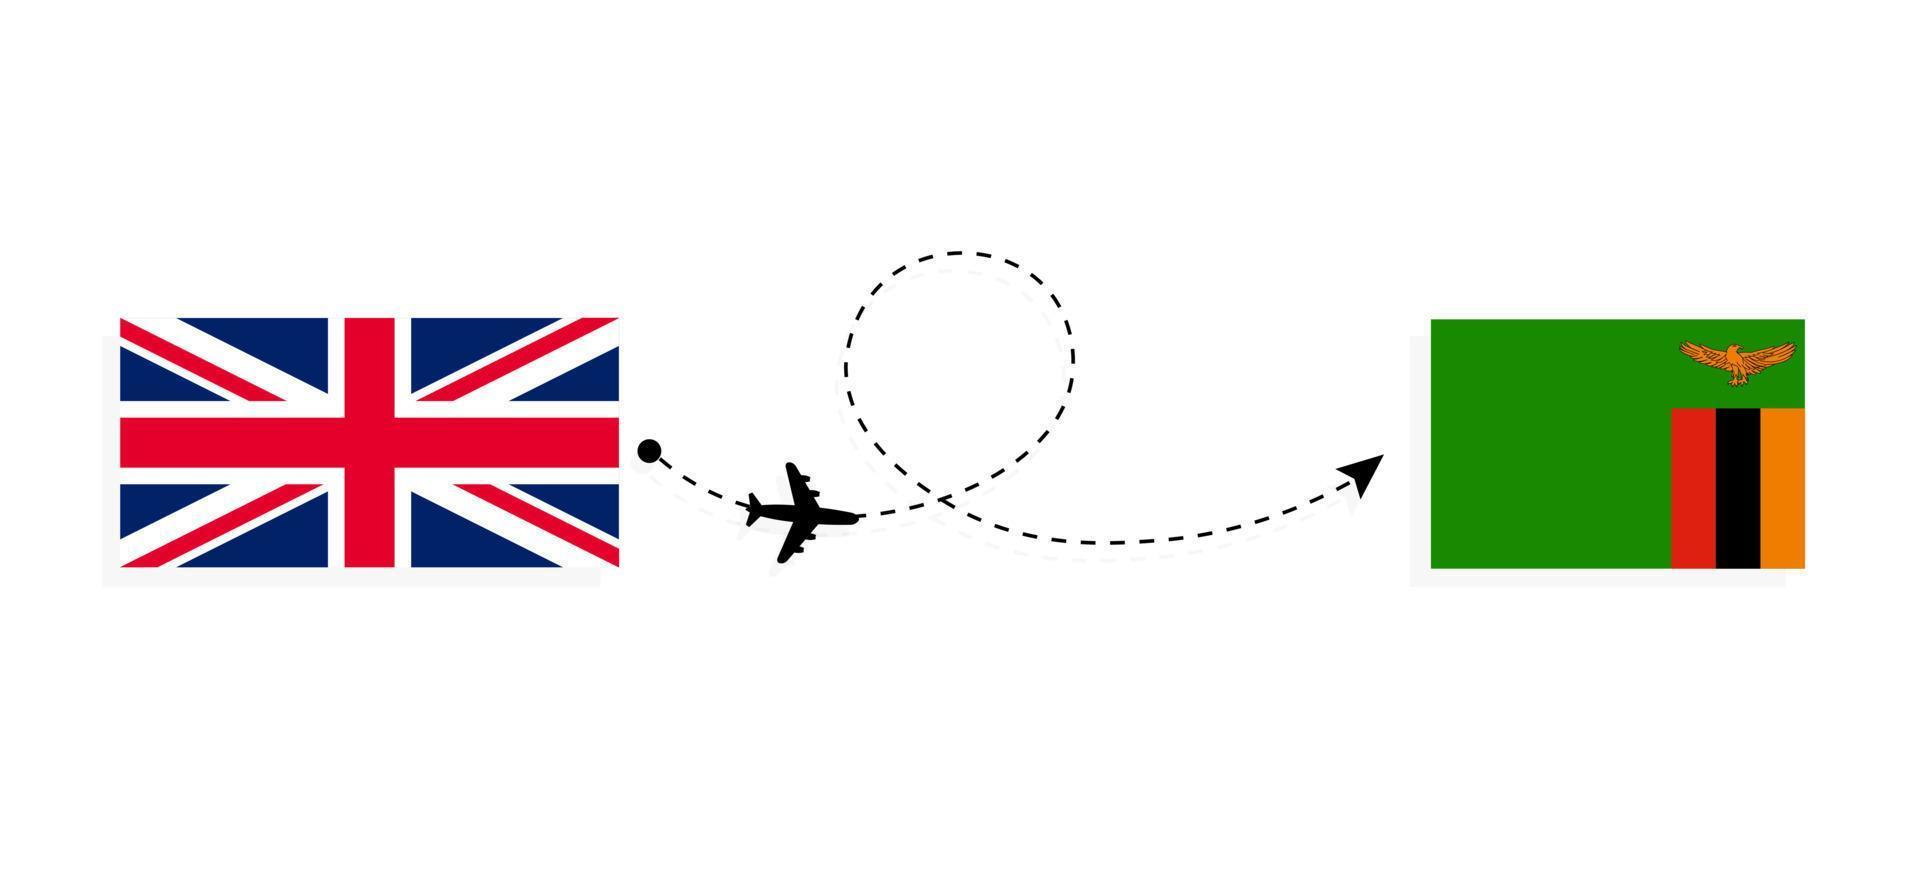 flyg och resor från Storbritannien till Zambia med passagerarflygplan vektor